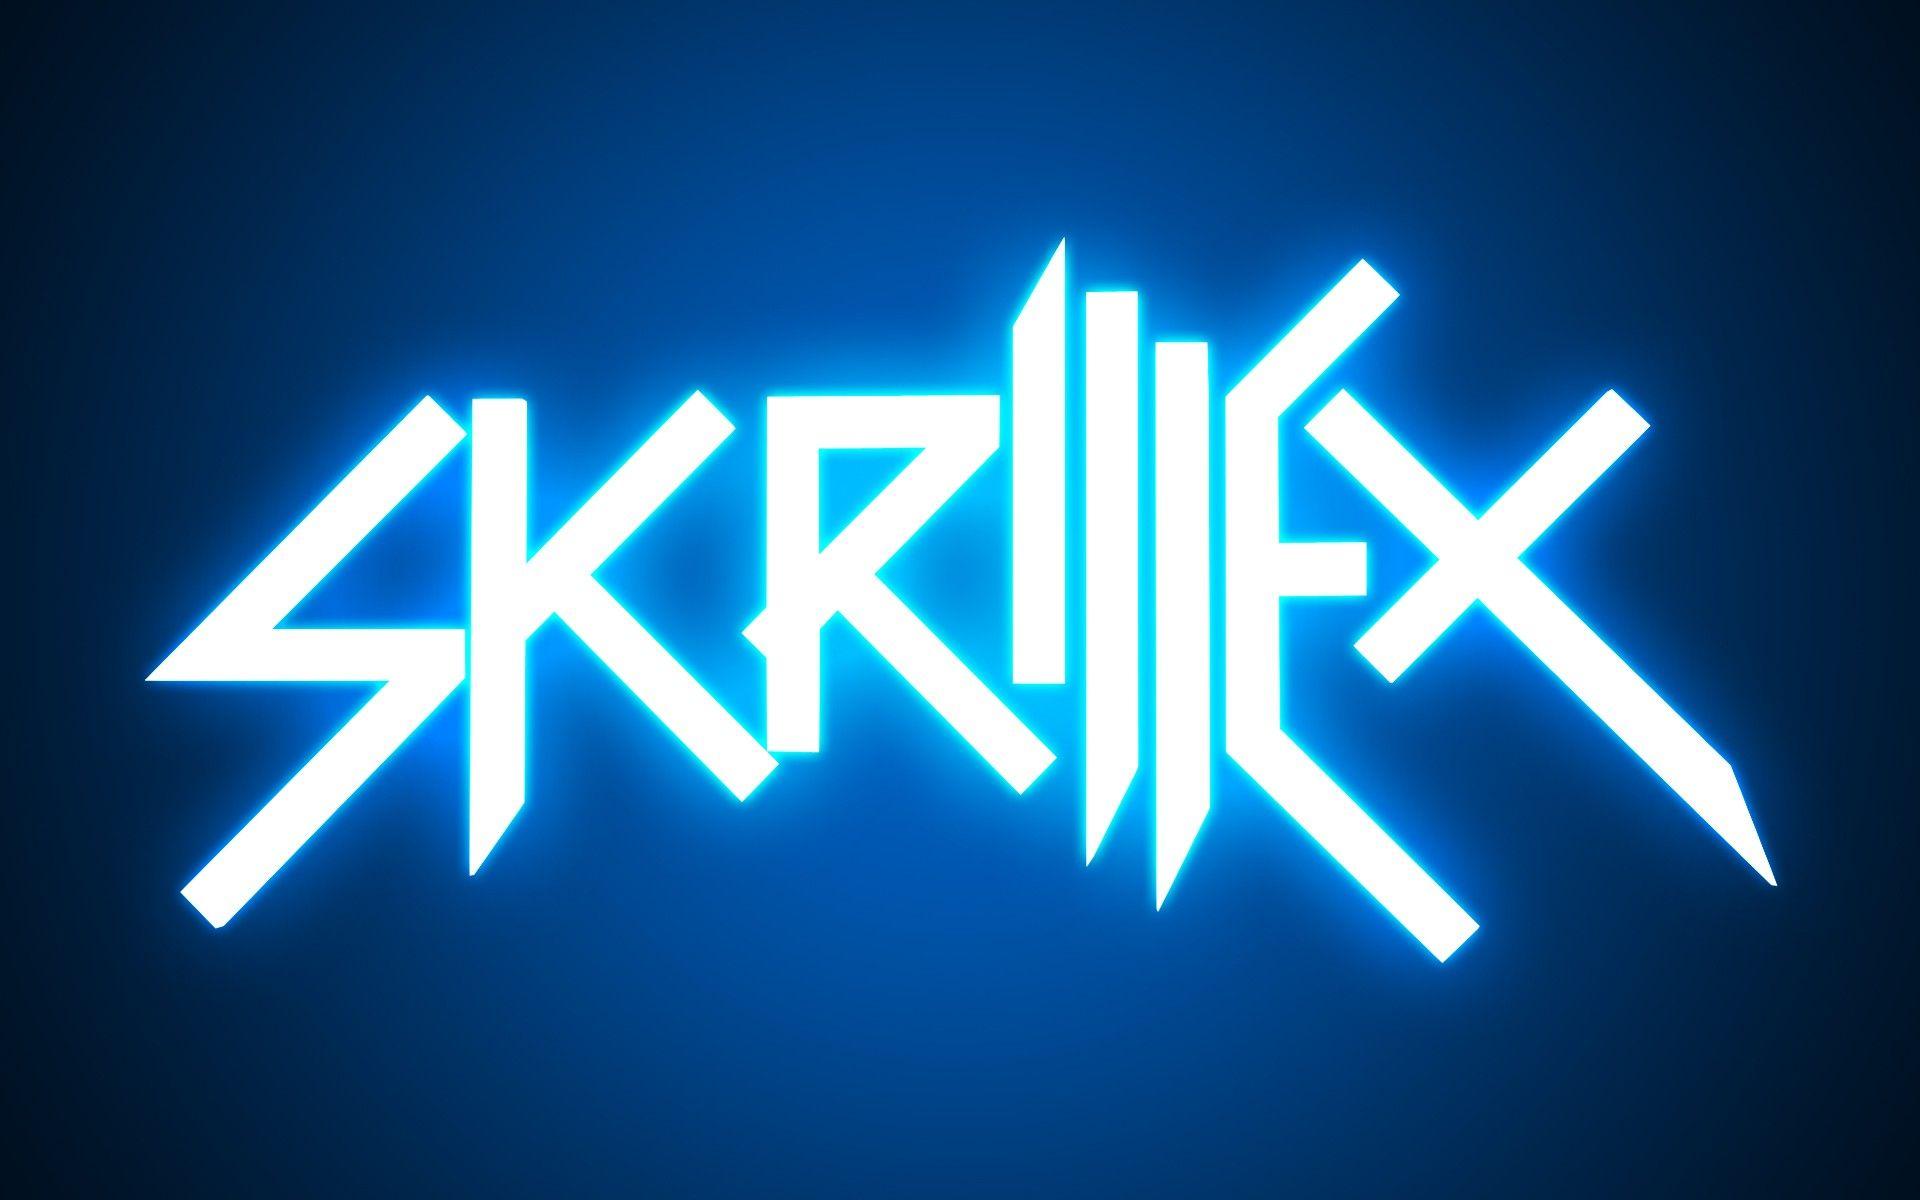 Skrillex Wallpaper for desktop and mobile